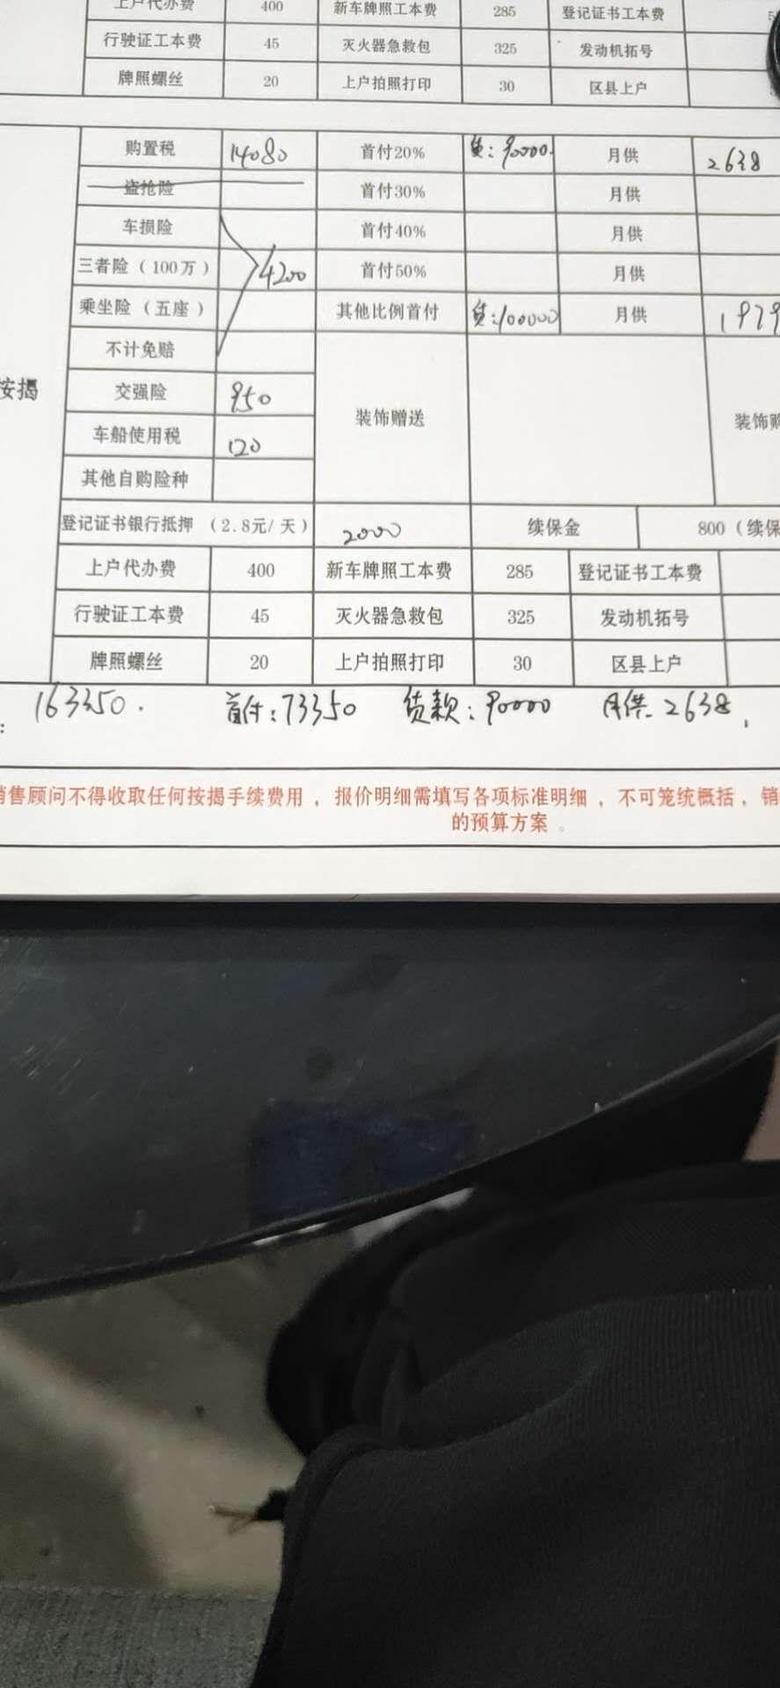 红旗h5 各位，在重庆提红旗20款1.5落地16.3贵了吗？